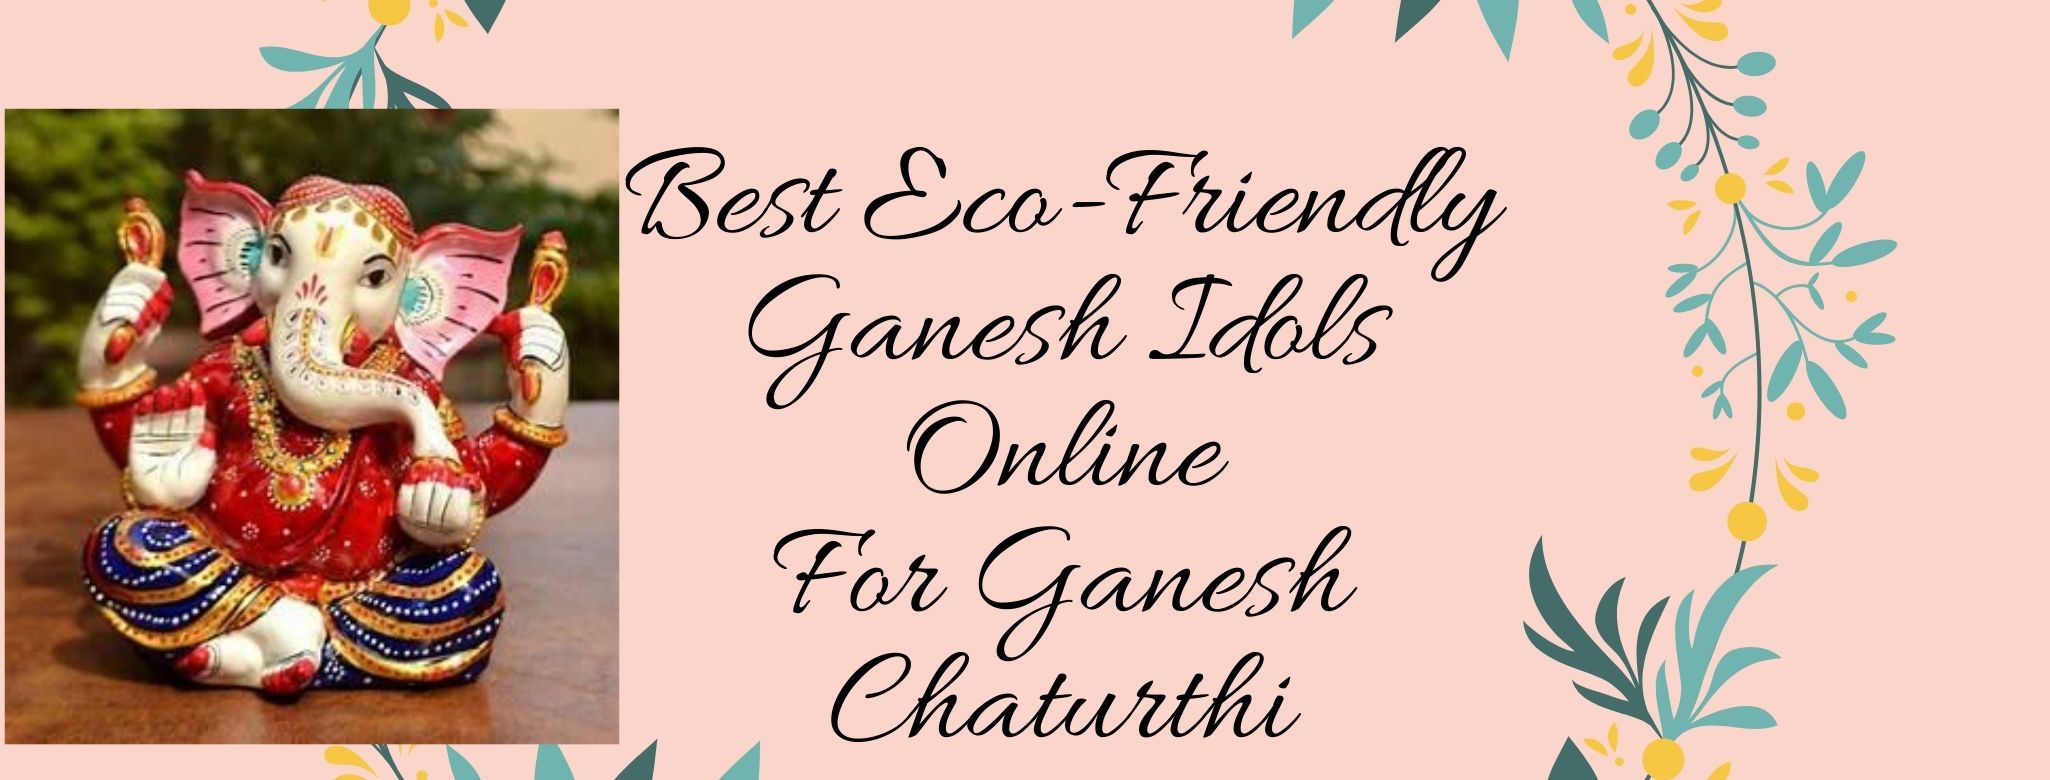 Best Eco-Friendly Ganesh Idols Online For Ganesh Chaturthi